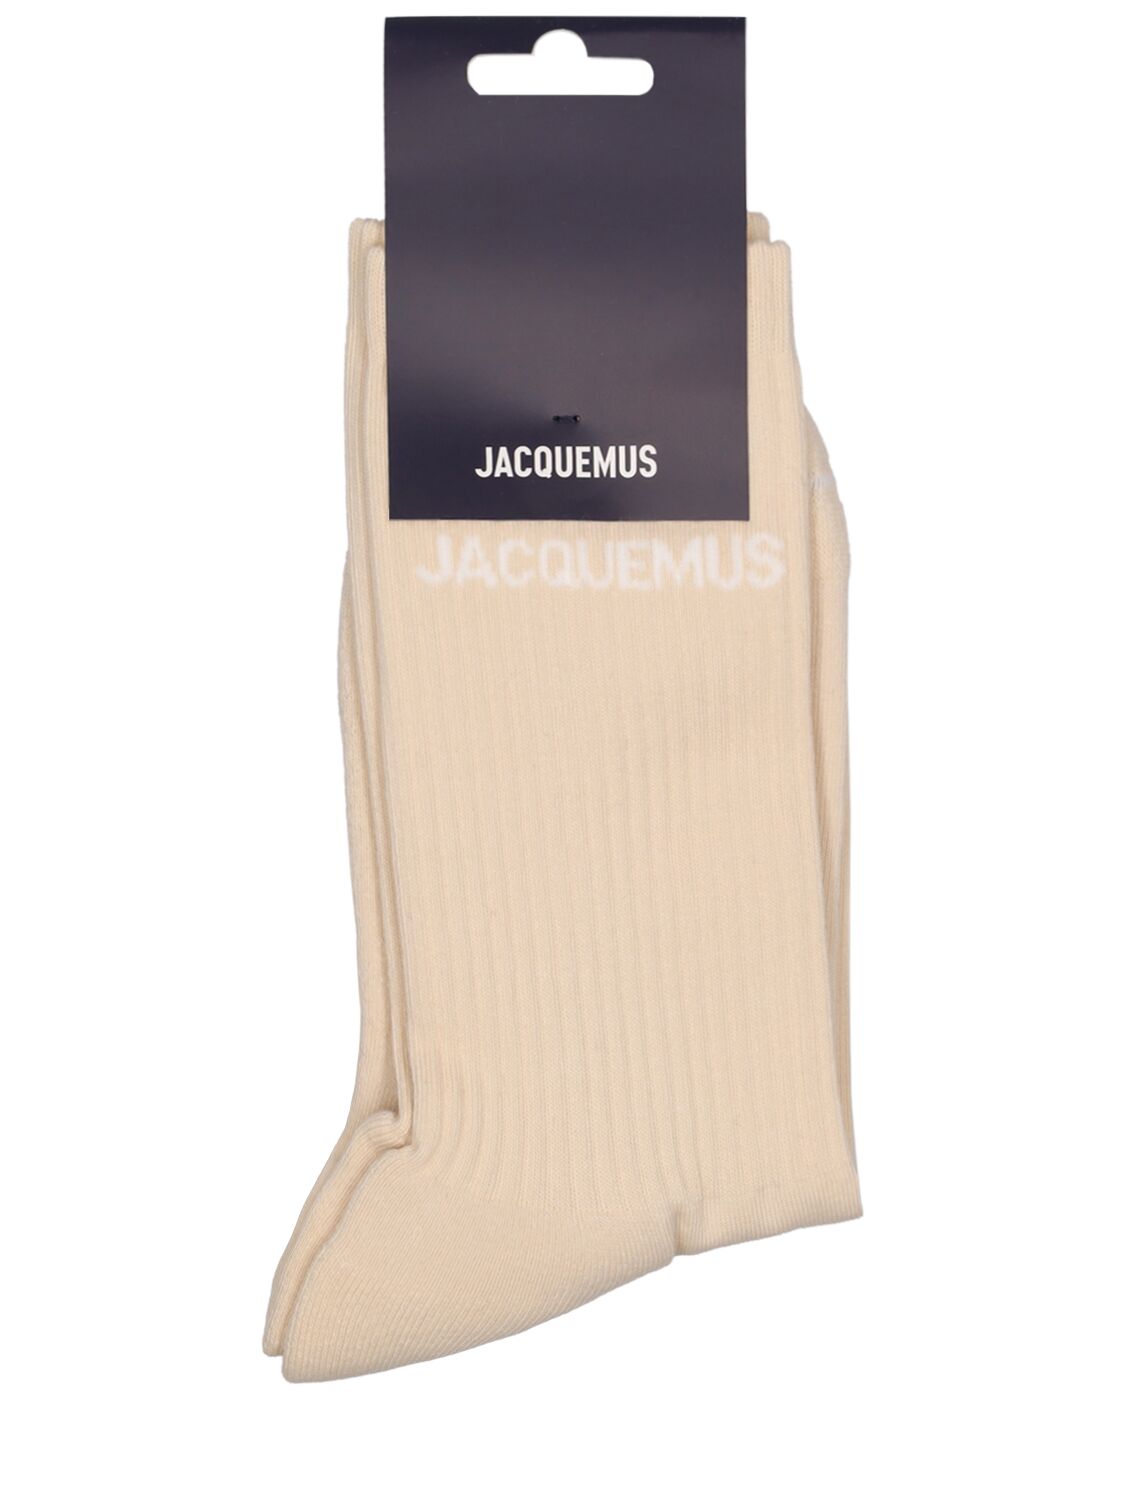 Jacquemus Les Chaussettes Cotton Blend Socks In Light Beige 2